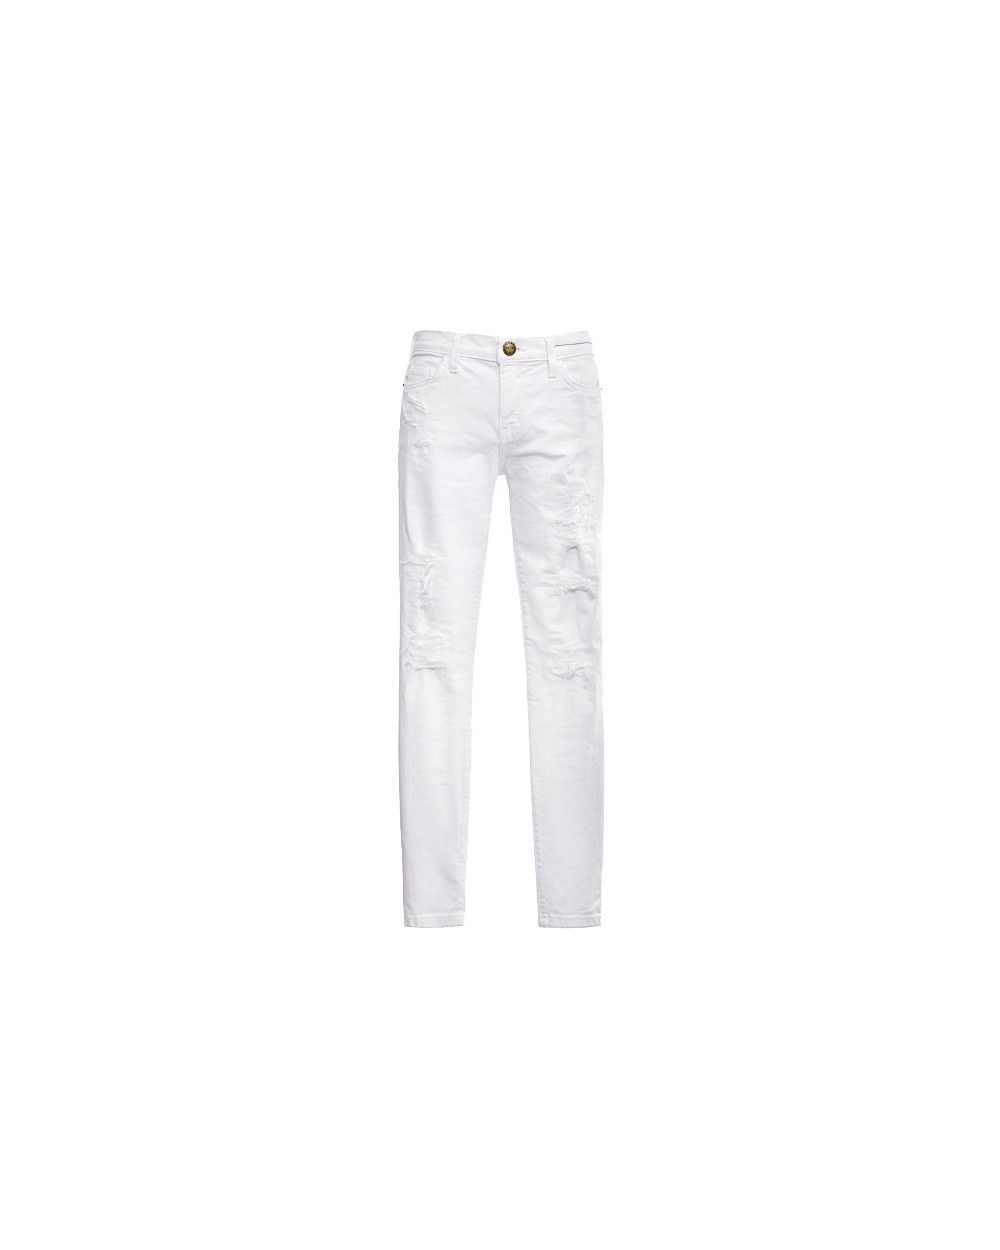 Jeans STILETTO 1280-0042 SUGAR